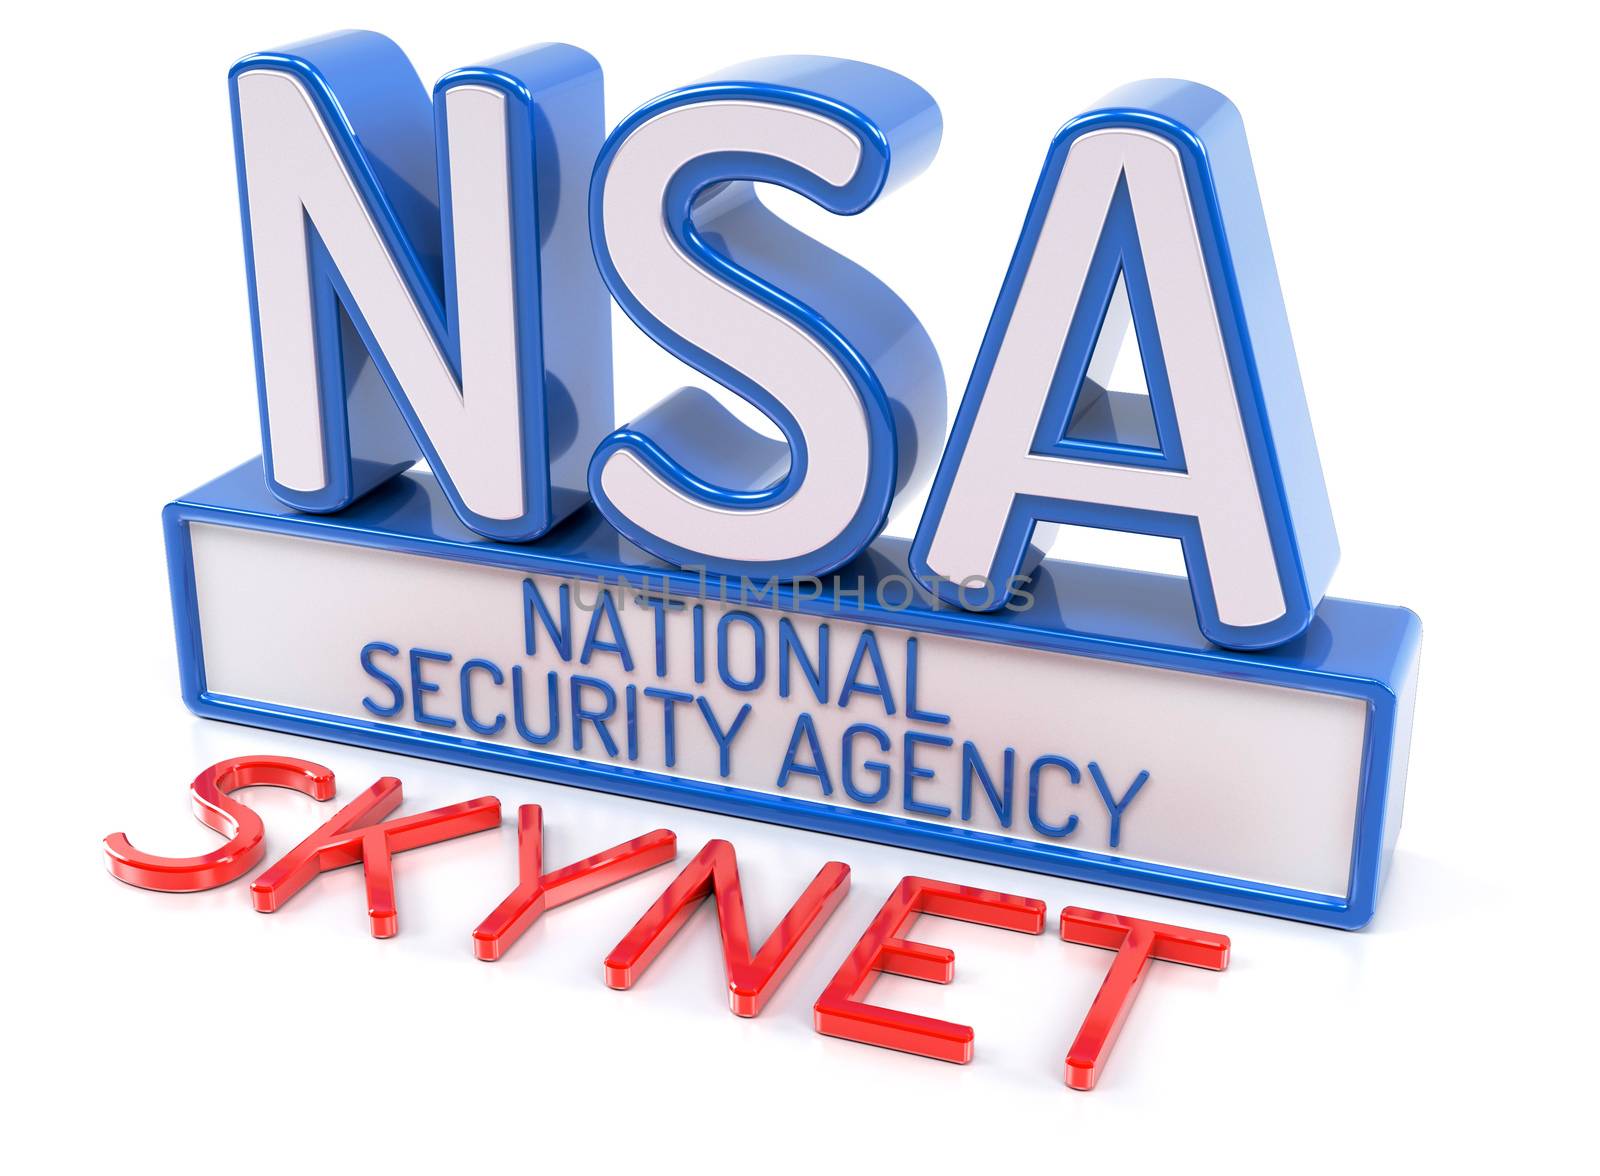 NSA SKYNET by akaprinay